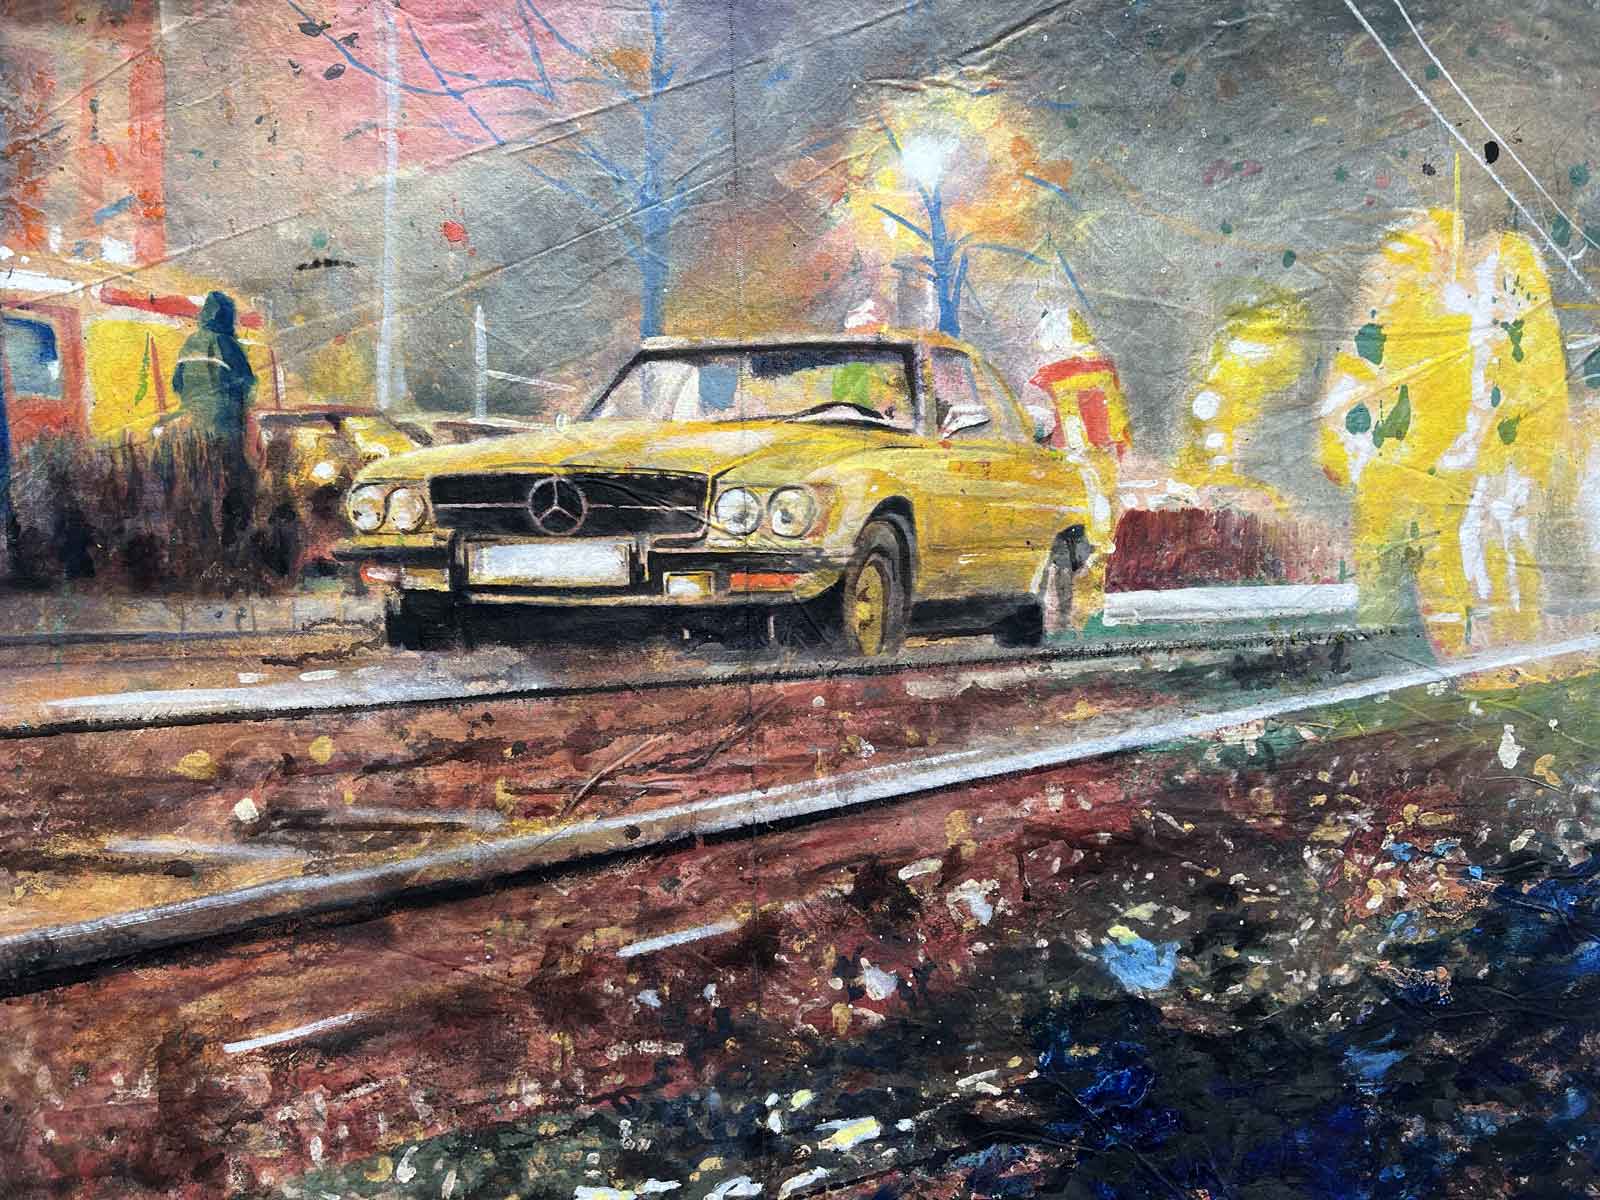 Acrylbild auf Leinwand das ein gelbes Auto neben Schienen zeigt